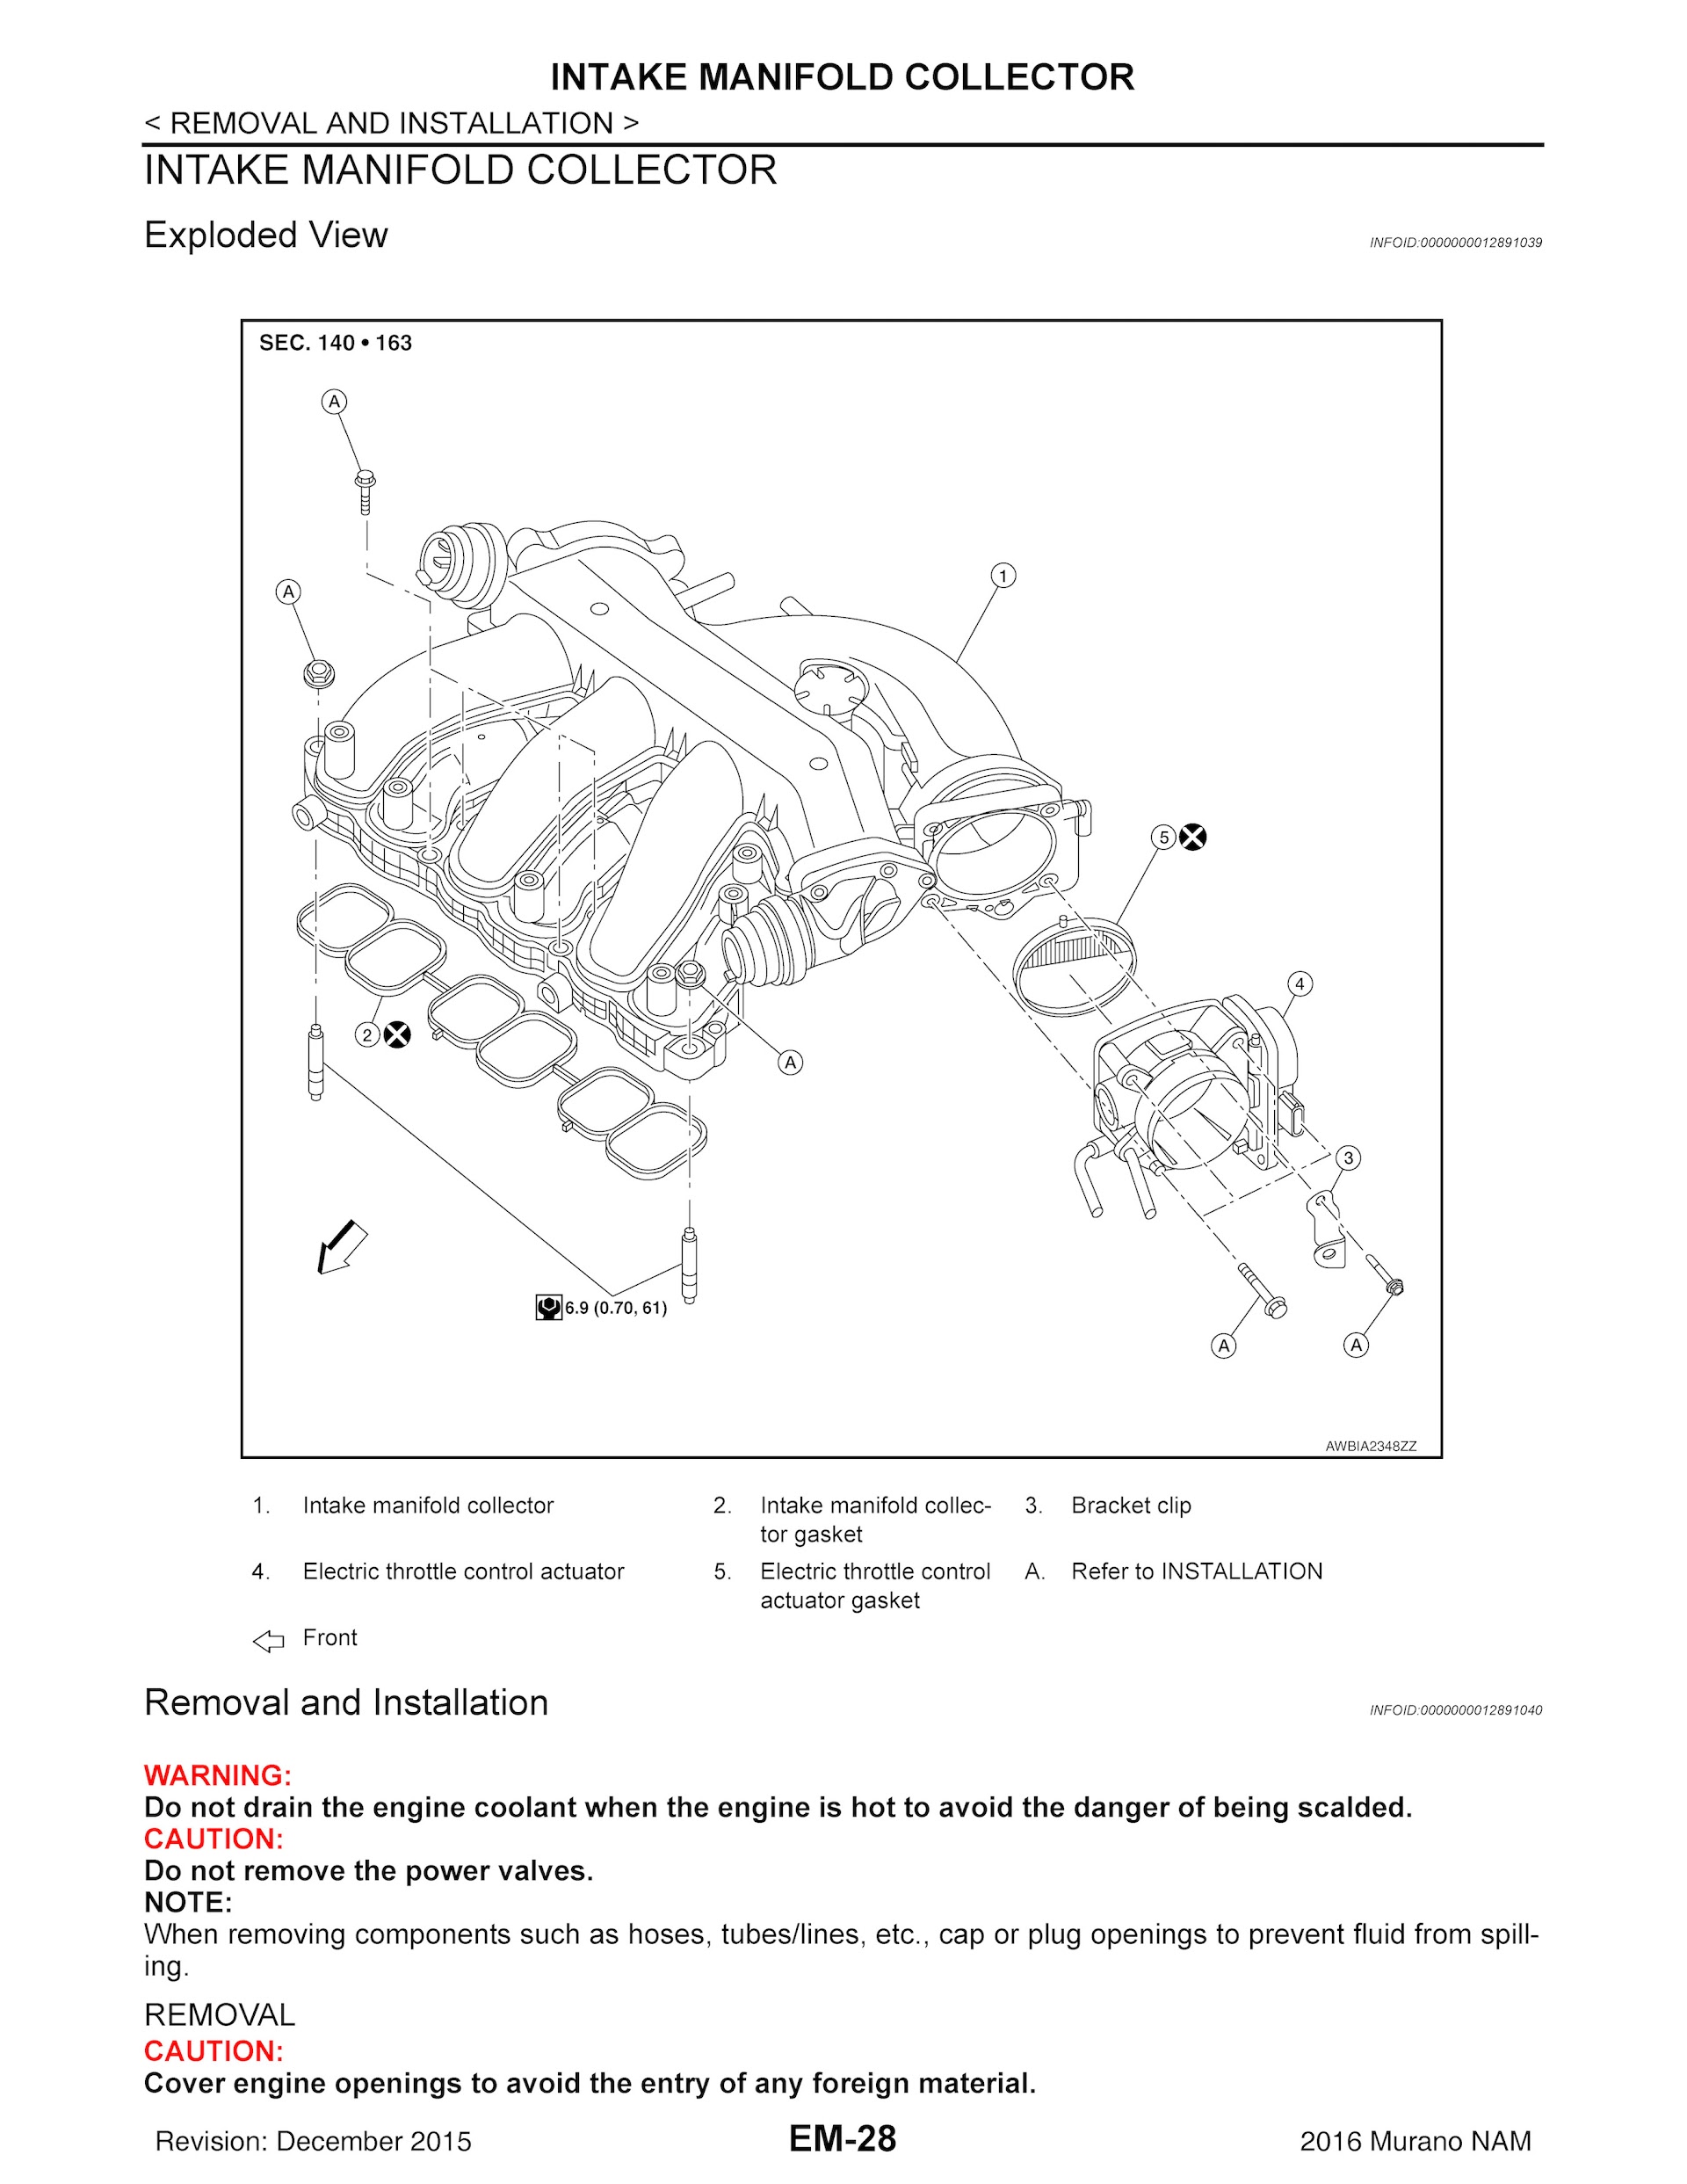 Download 2016-2020 Nissan Murano Repair Manual